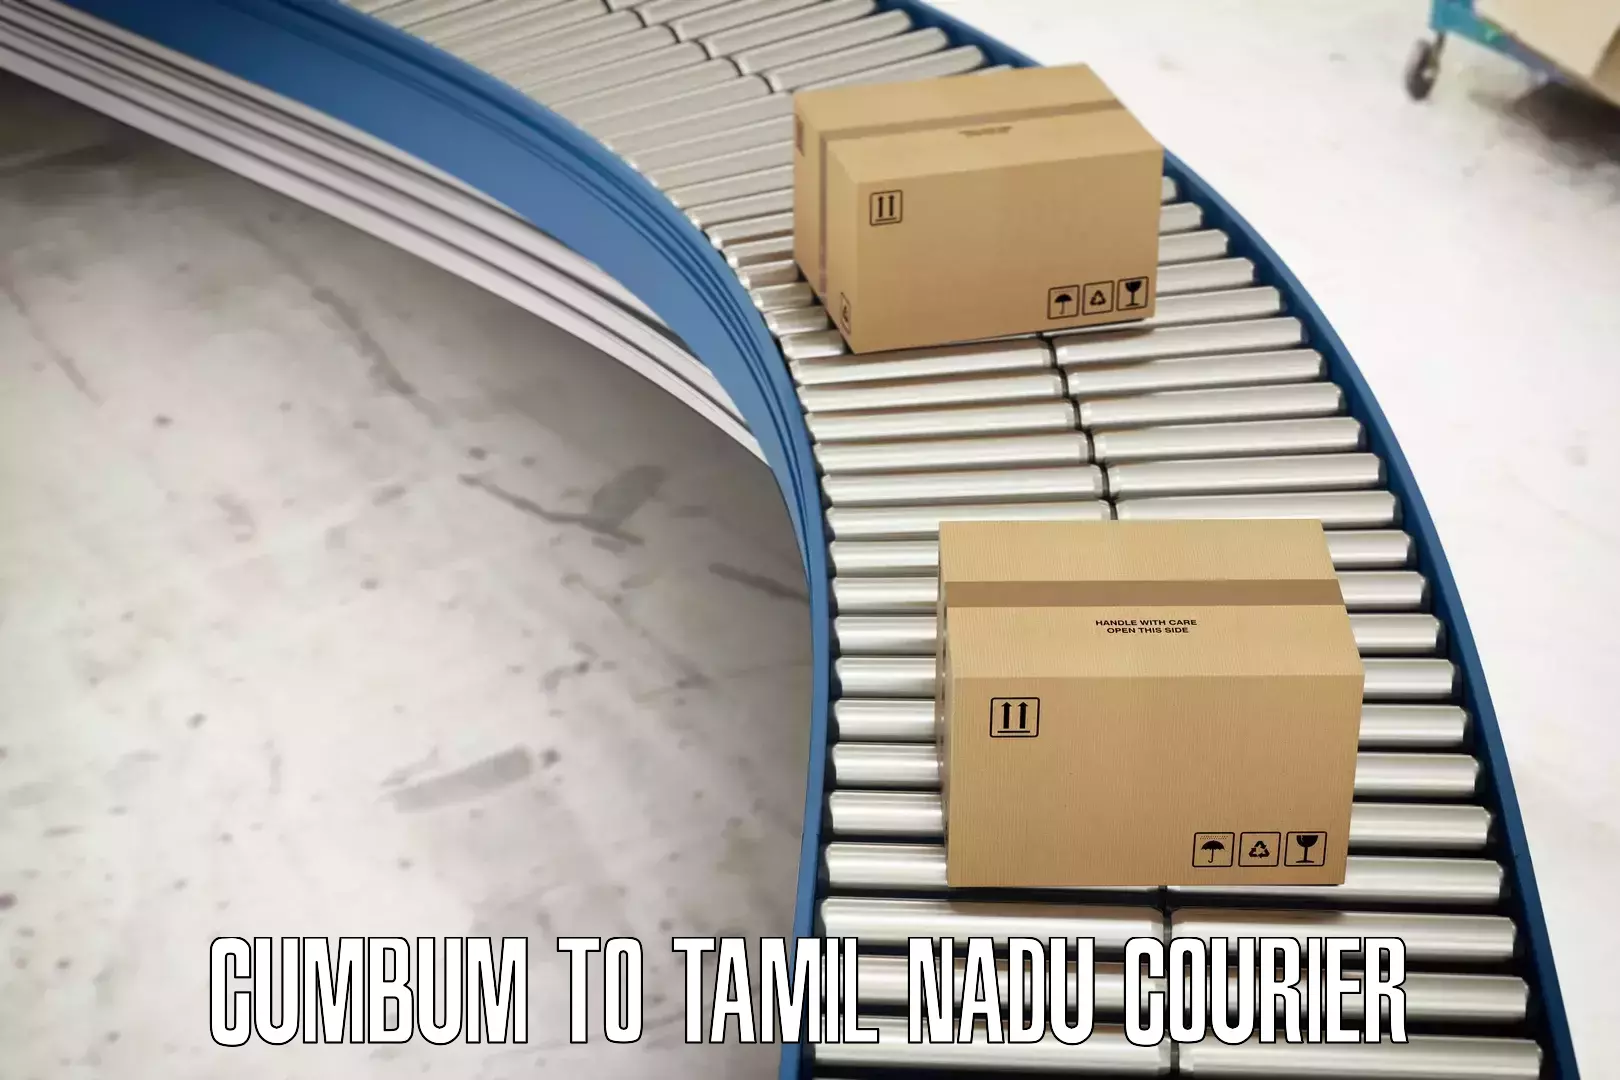 Efficient parcel service in Cumbum to Tamil Nadu